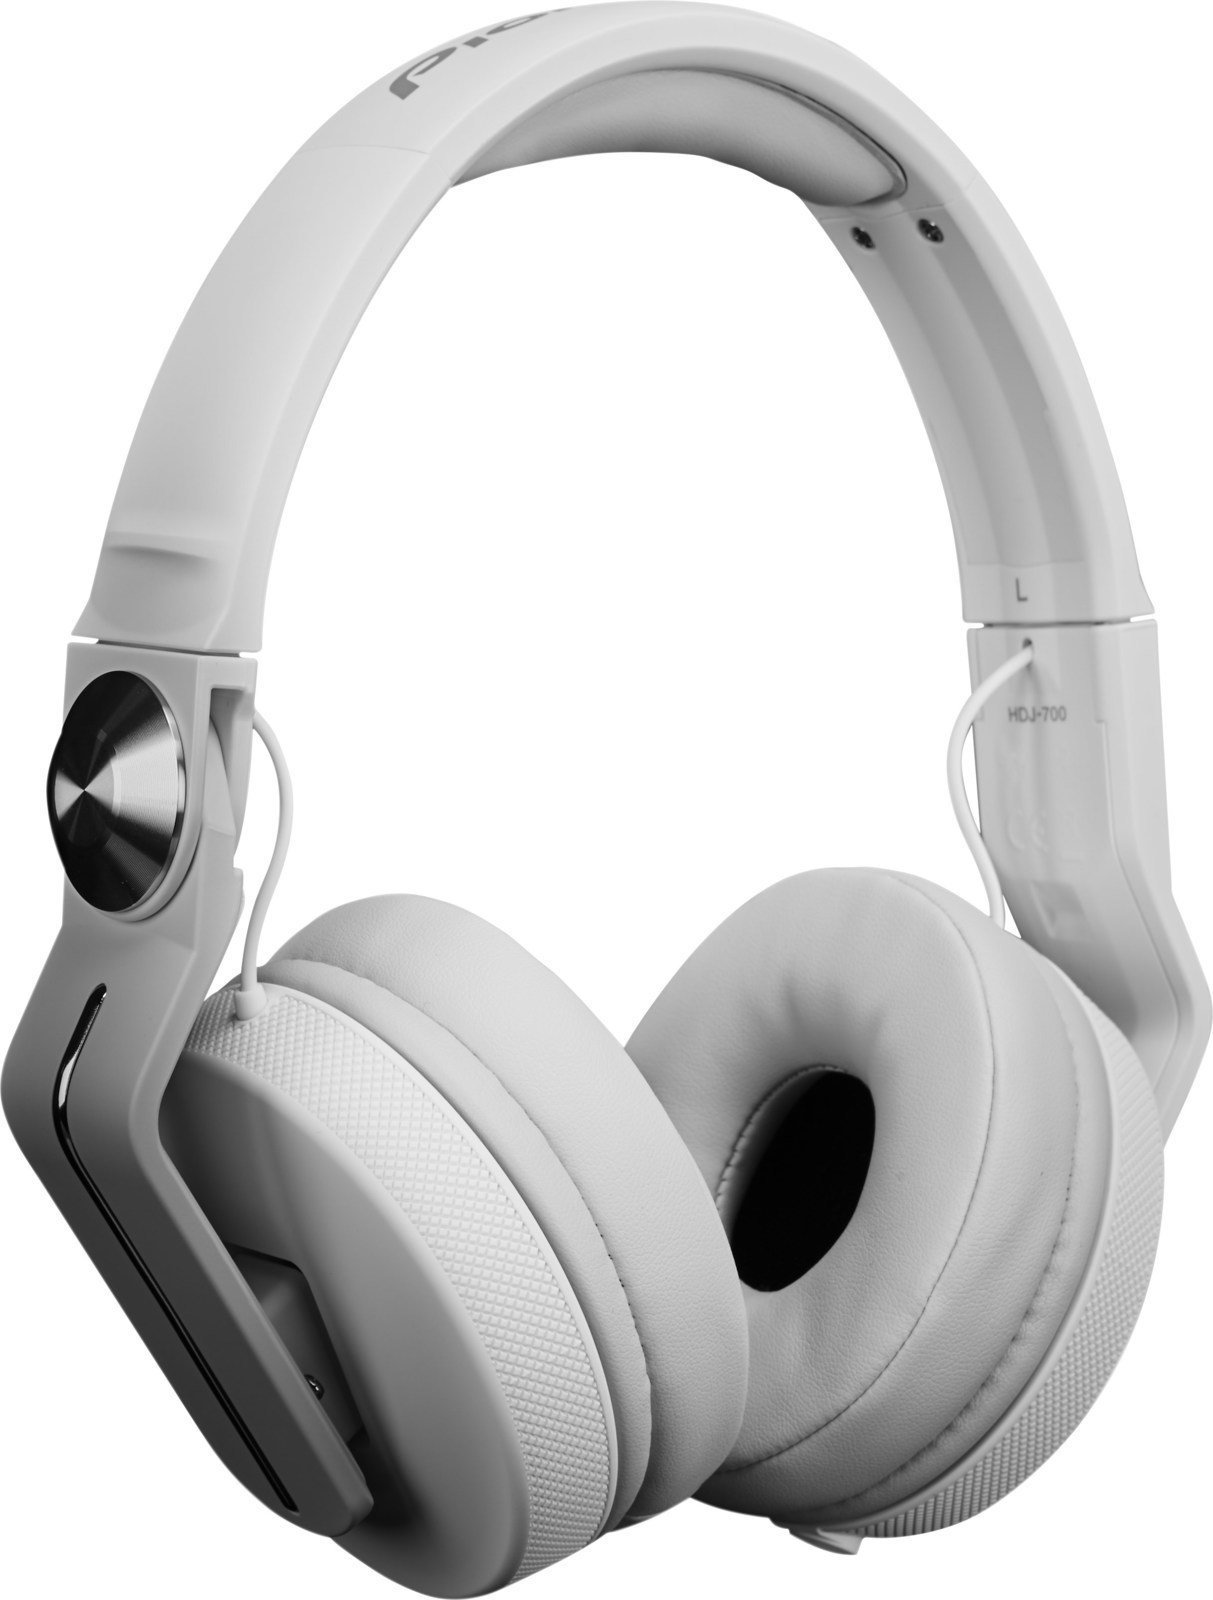 DJ slušalke Pioneer Dj HDJ-700-W White